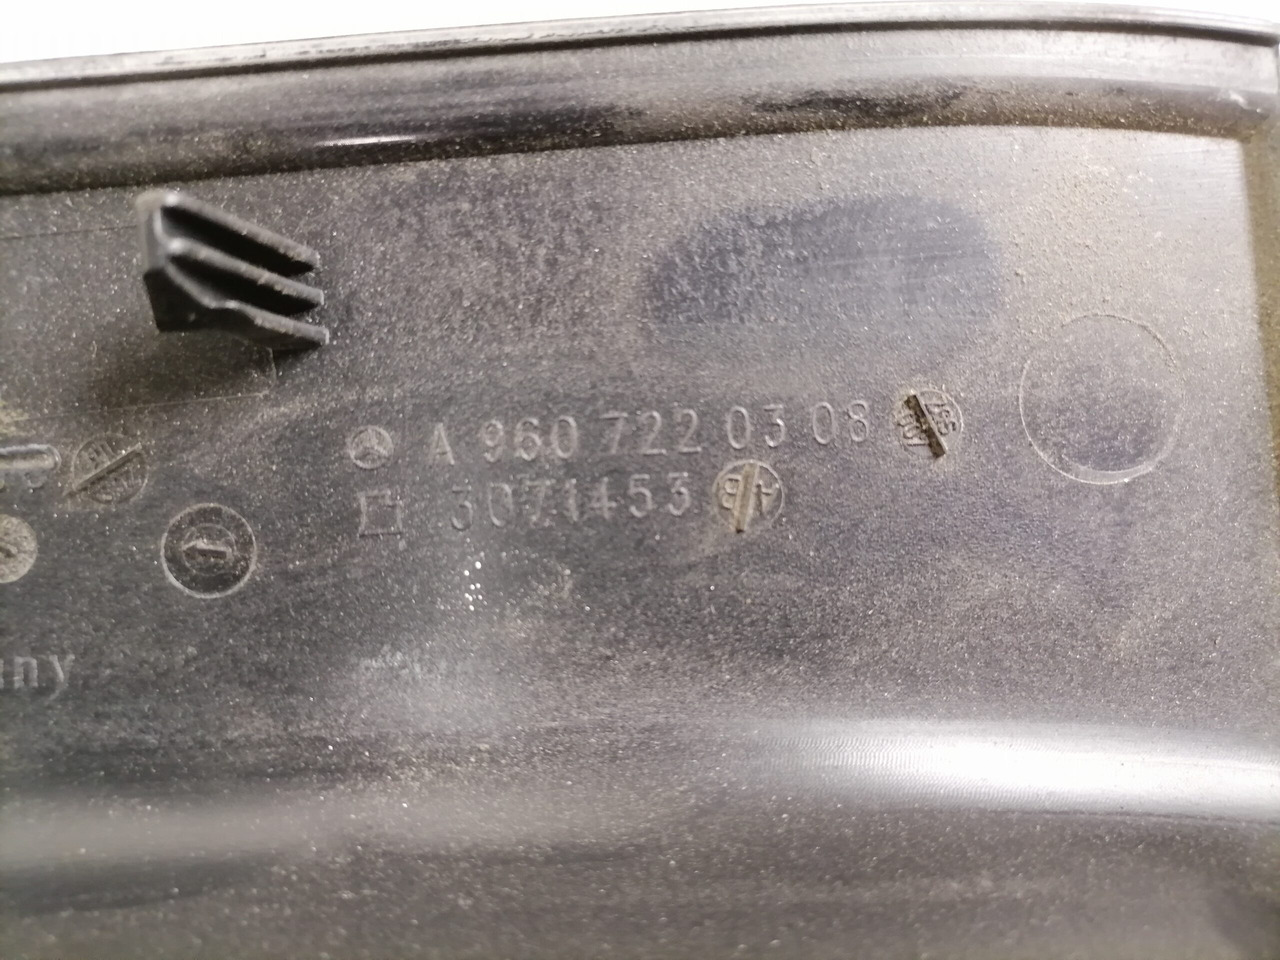 Универсальная запчасть для Грузовиков Mercedes-Benz Salongi plastik A9607220308: фото 4